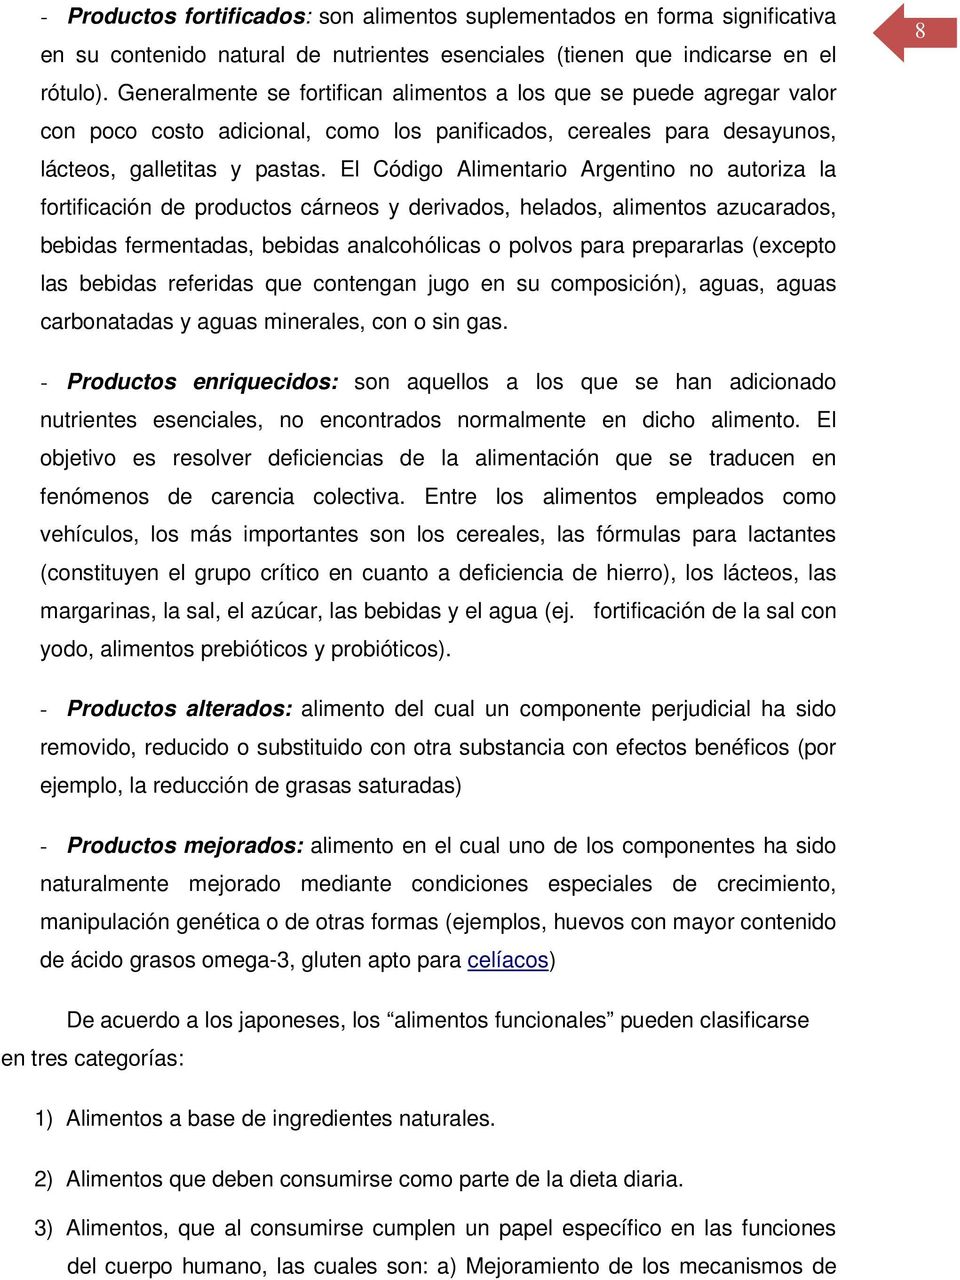 El Código Alimentario Argentino no autoriza la fortificación de productos cárneos y derivados, helados, alimentos azucarados, bebidas fermentadas, bebidas analcohólicas o polvos para prepararlas